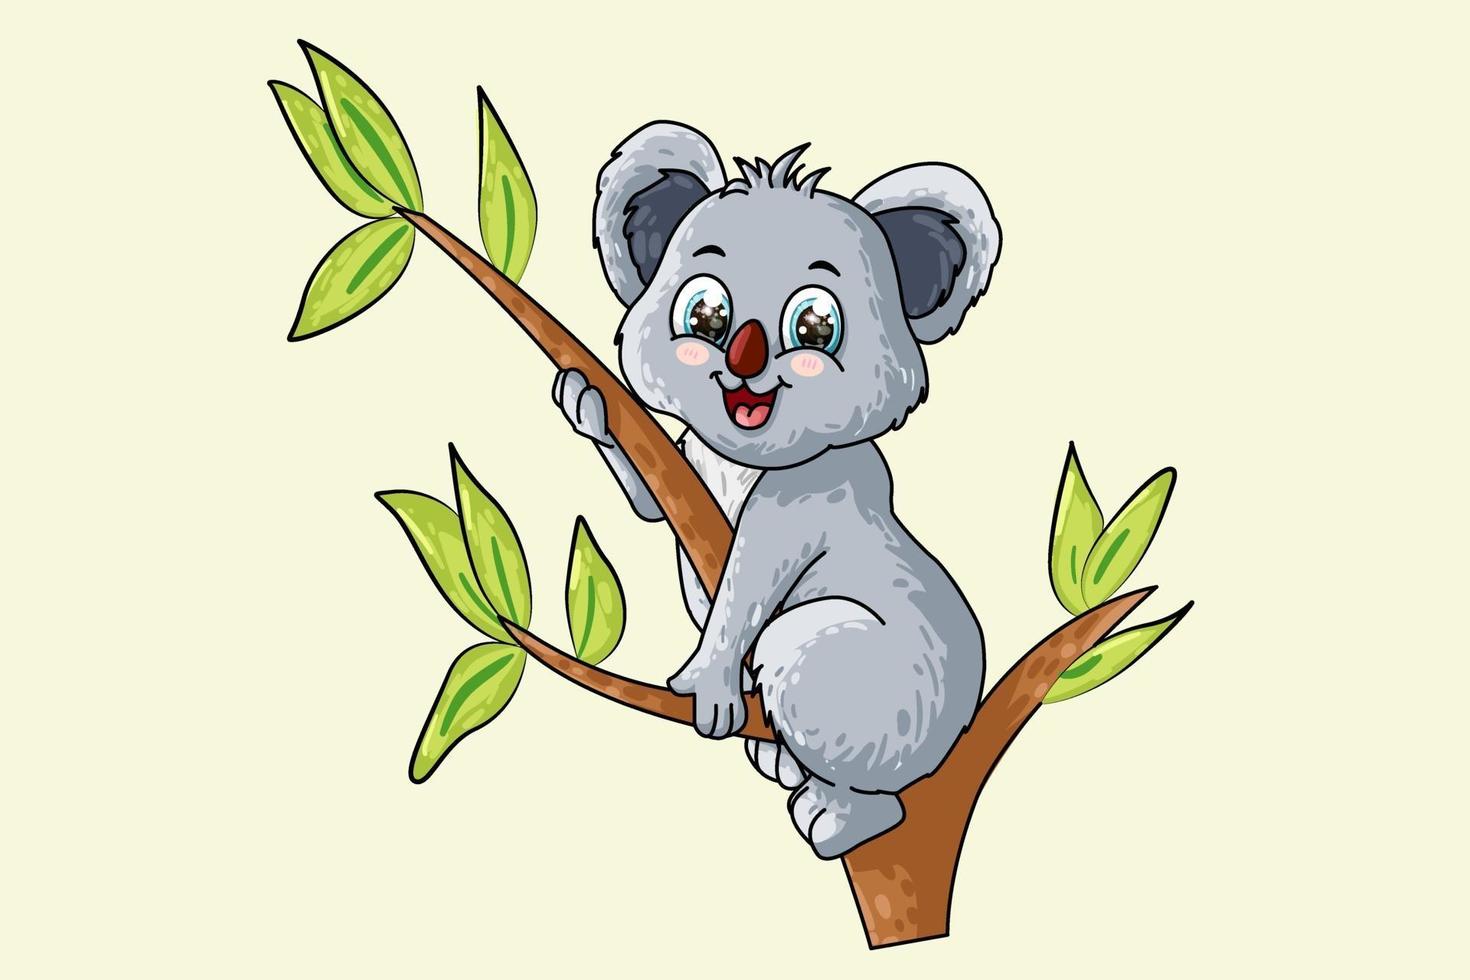 um pequeno e fofo coala bebê em uma árvore, desenho animal cartoon ilustração vetorial vetor